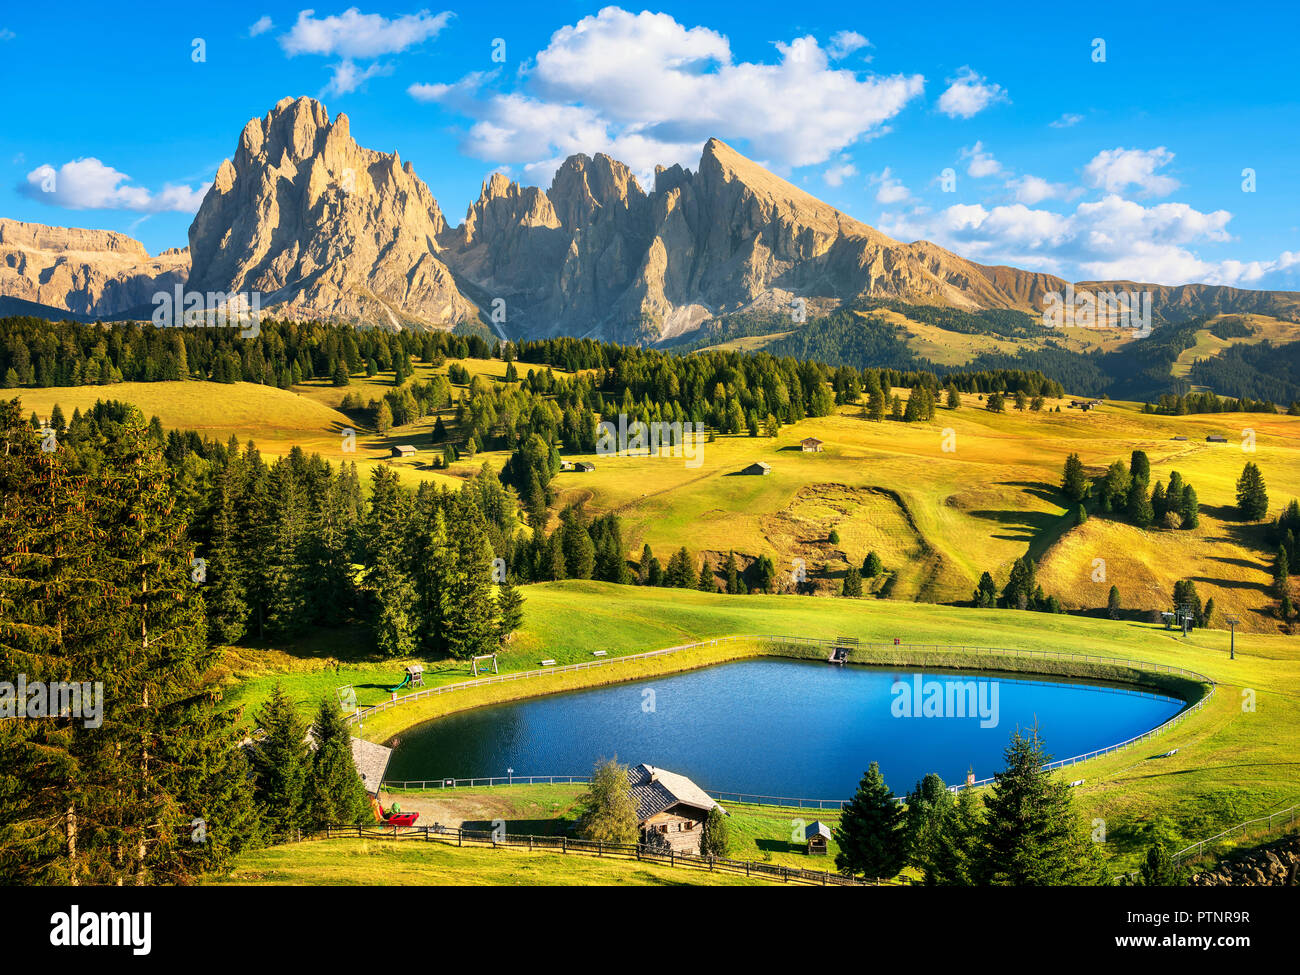 See und Berge bei Sonnenuntergang, Seiser Alm oder Seiser Alm, Dolomiten  Alpen Langkofel und Sassopiato, Trentino Alto Adige Sud Tirol, Italien,  Europa Stockfotografie - Alamy